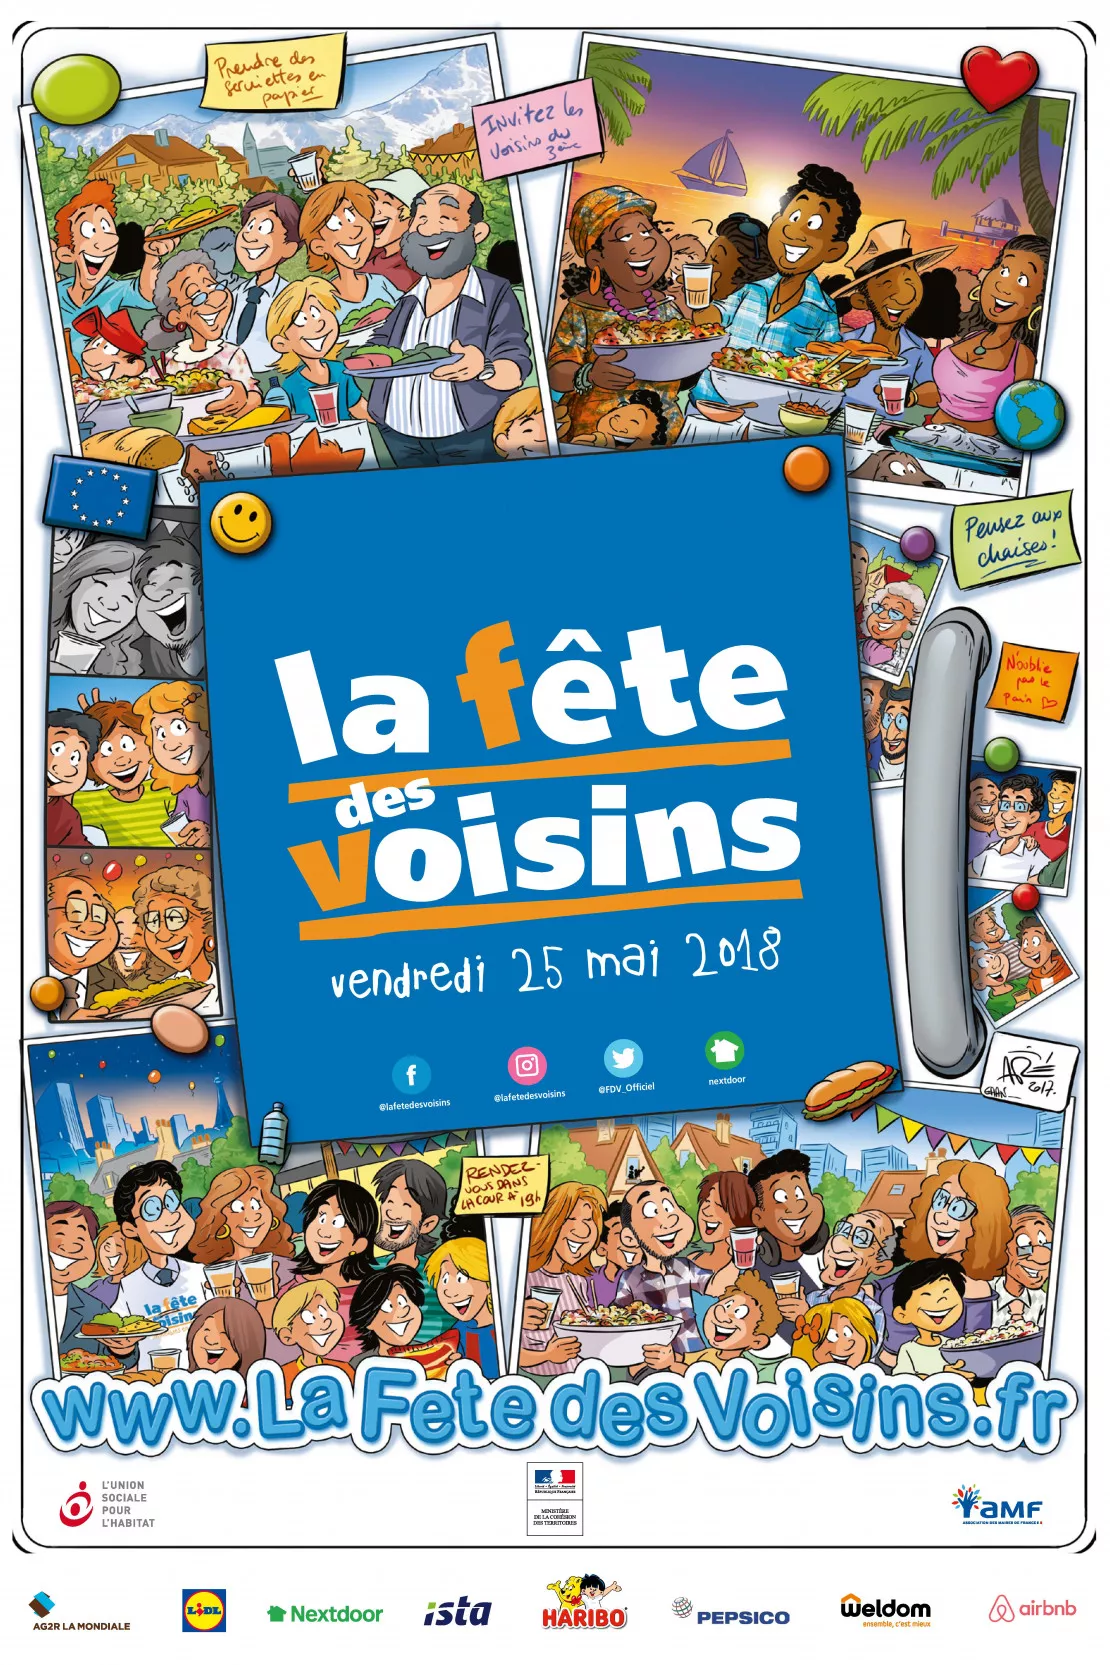 Retrouvez La 19ème édition de la Fête des Voisins vendredi 25 mai à ST Nazaire les Eymes